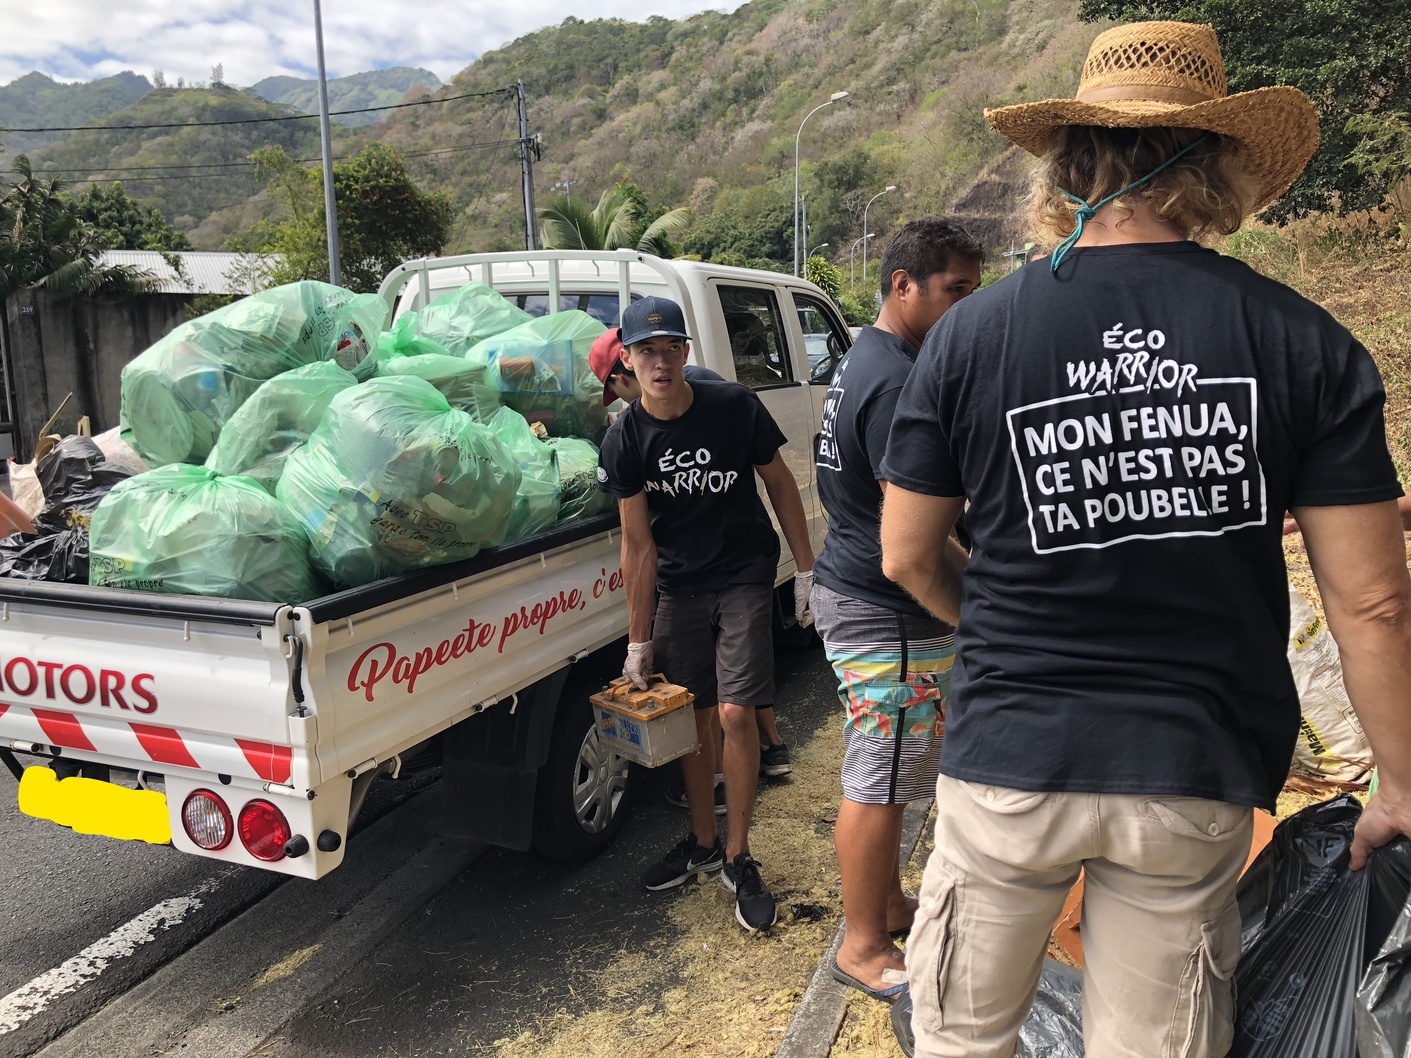 "Mon fenua ce n'est pas ta poubelle". C'est vêtus d'un t-shirt noir avec ce slogan dans le dos, que les Eco Warriors ont débuté leurs actions hier dans la vallée de Titioro.